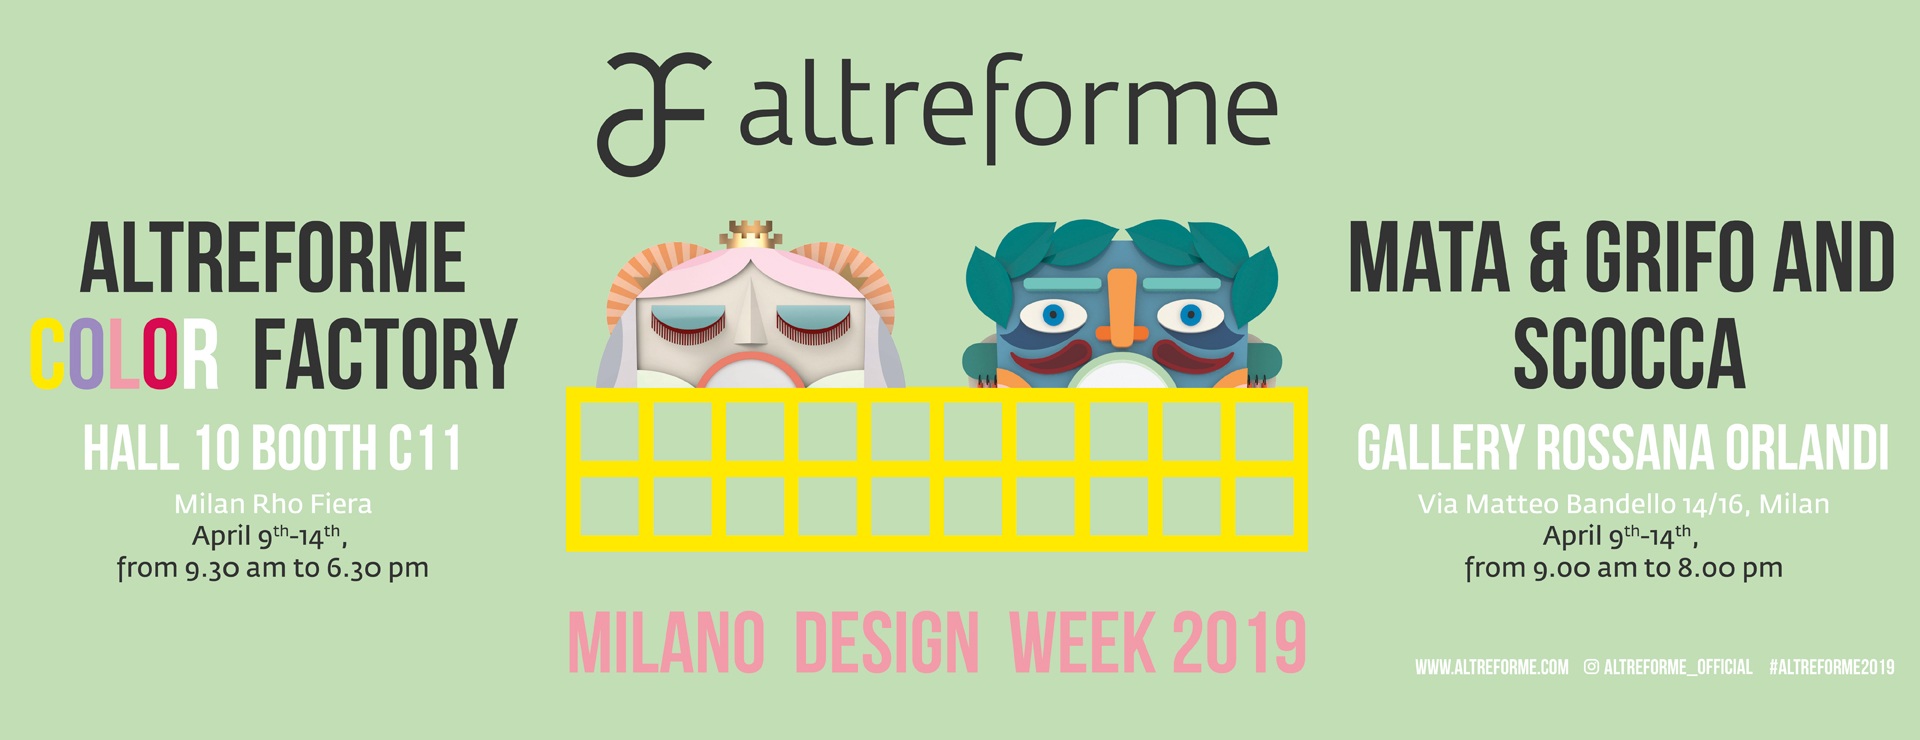 Milano Design Week 2019